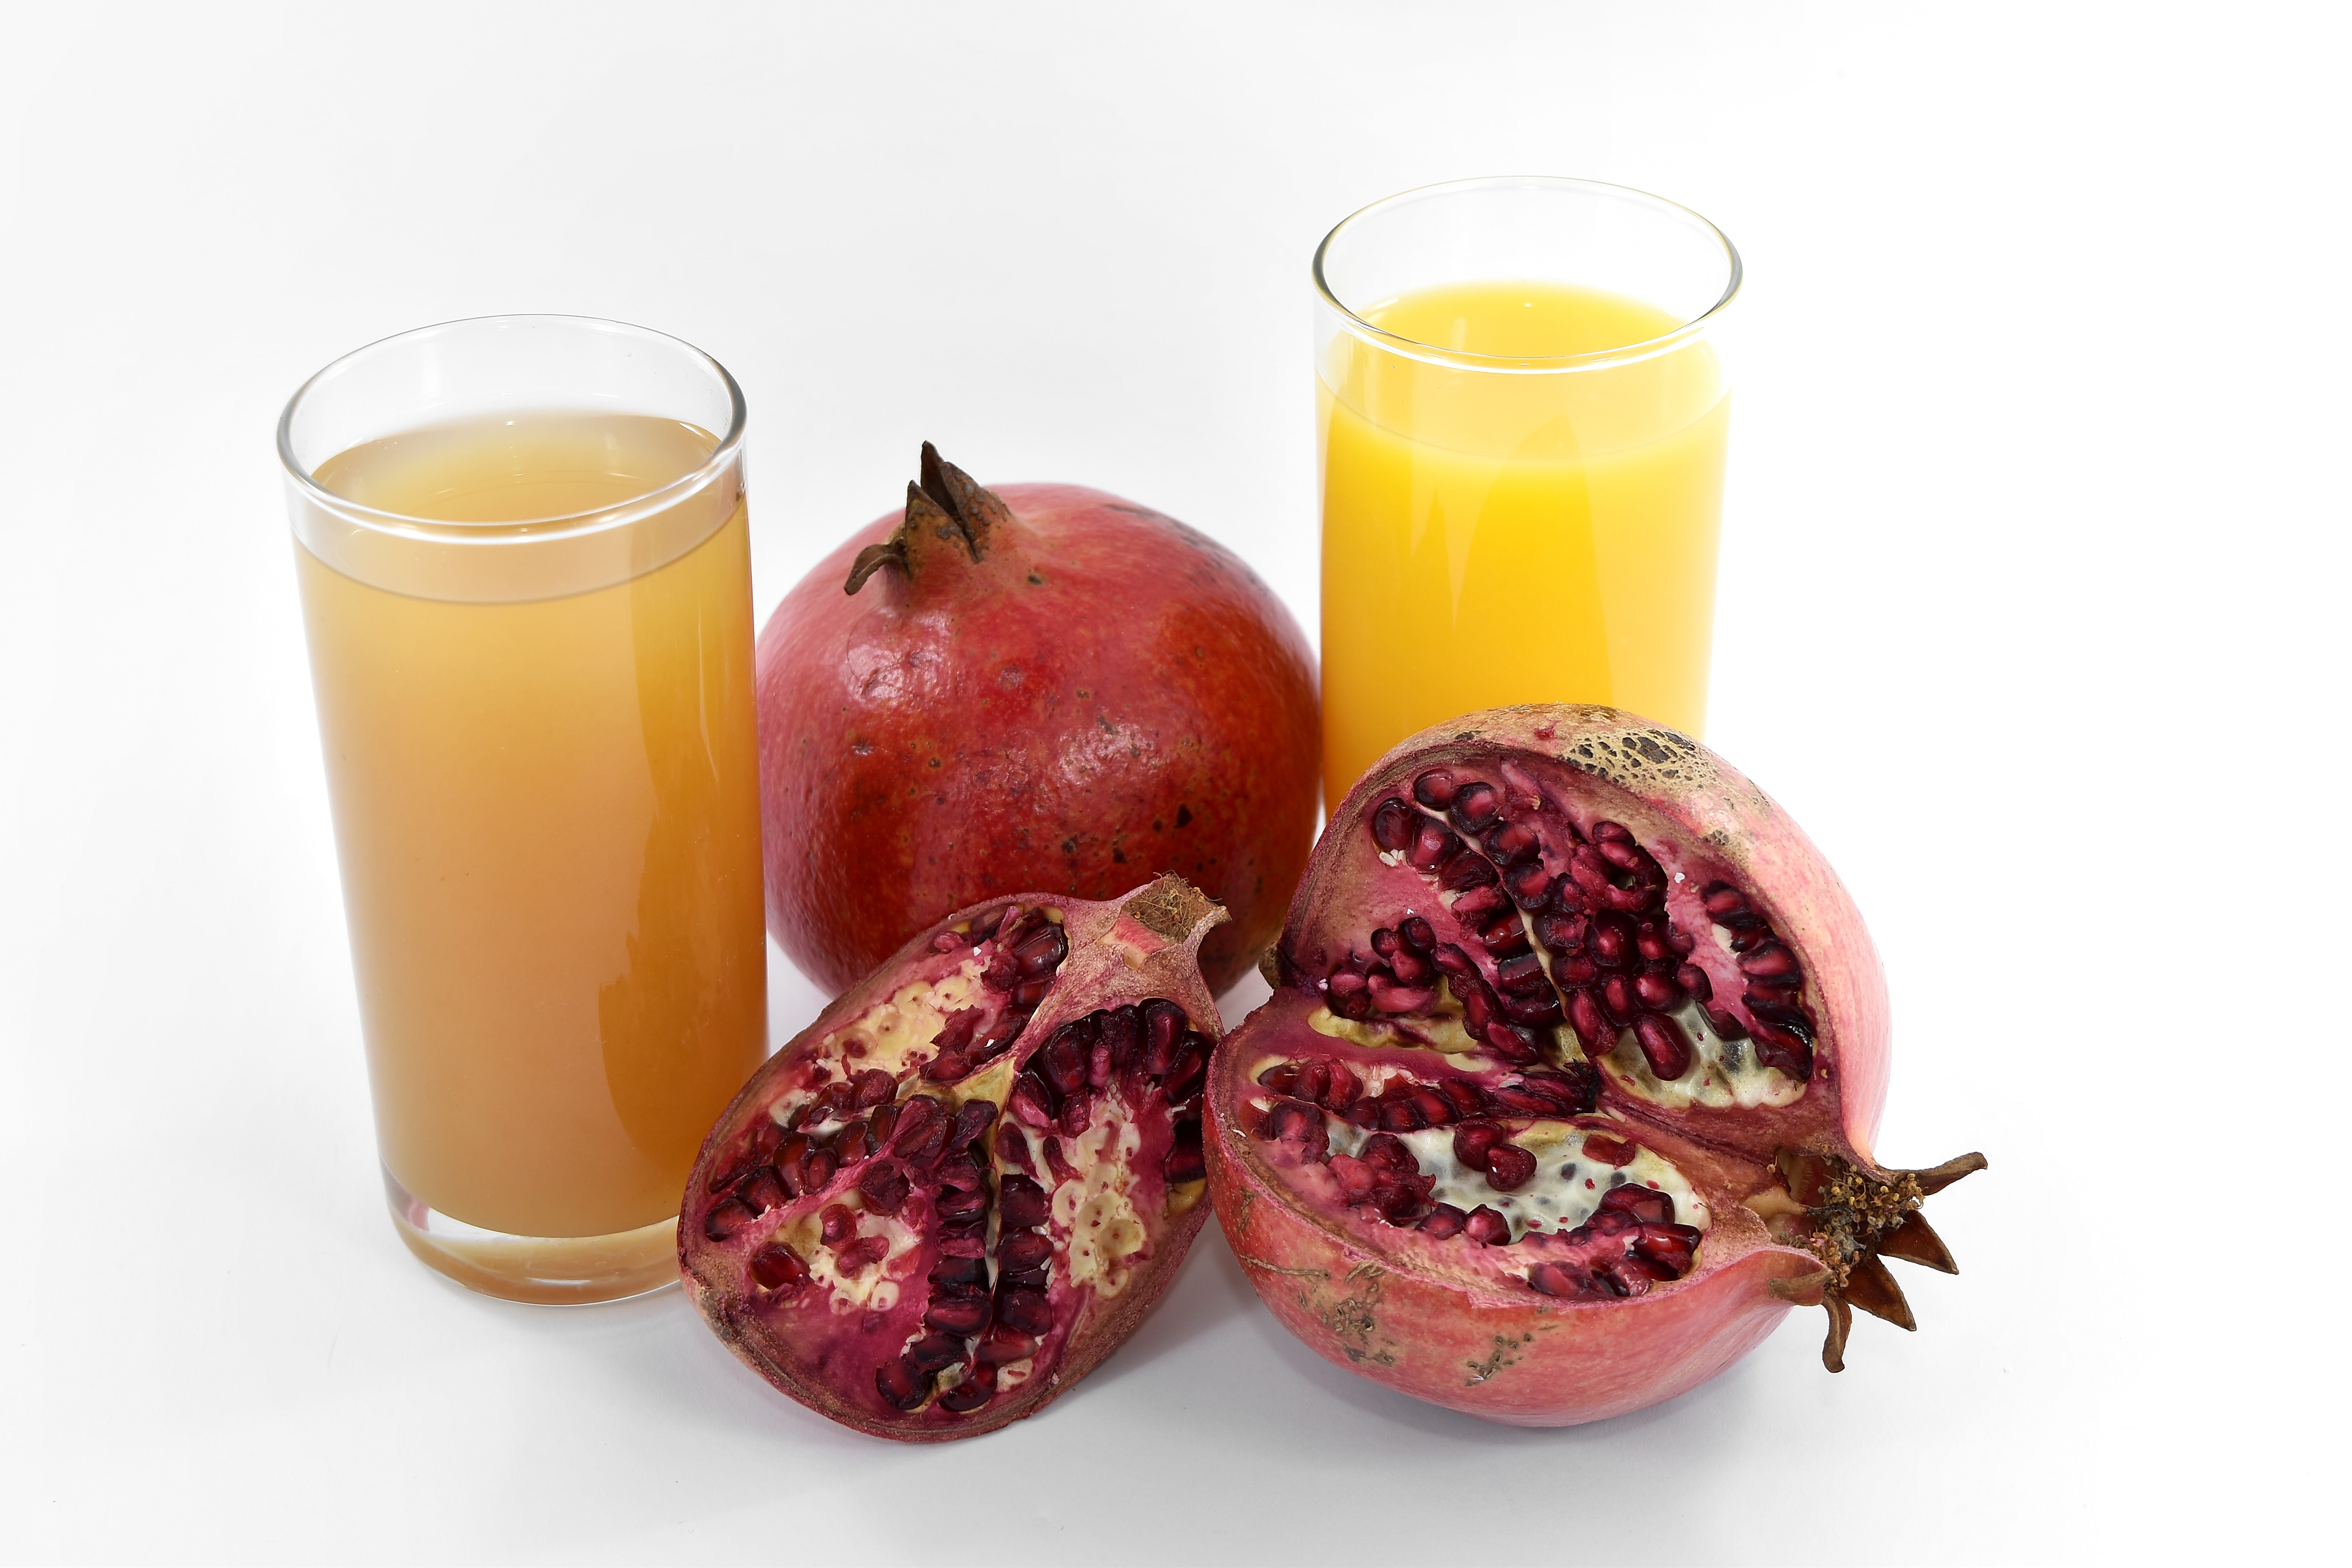 フリー写真画像 フルーツ ジュース ハーブ 有機 ザクロ 熟した果実 フルーツ ジュース ガラス 食品 ドリンク